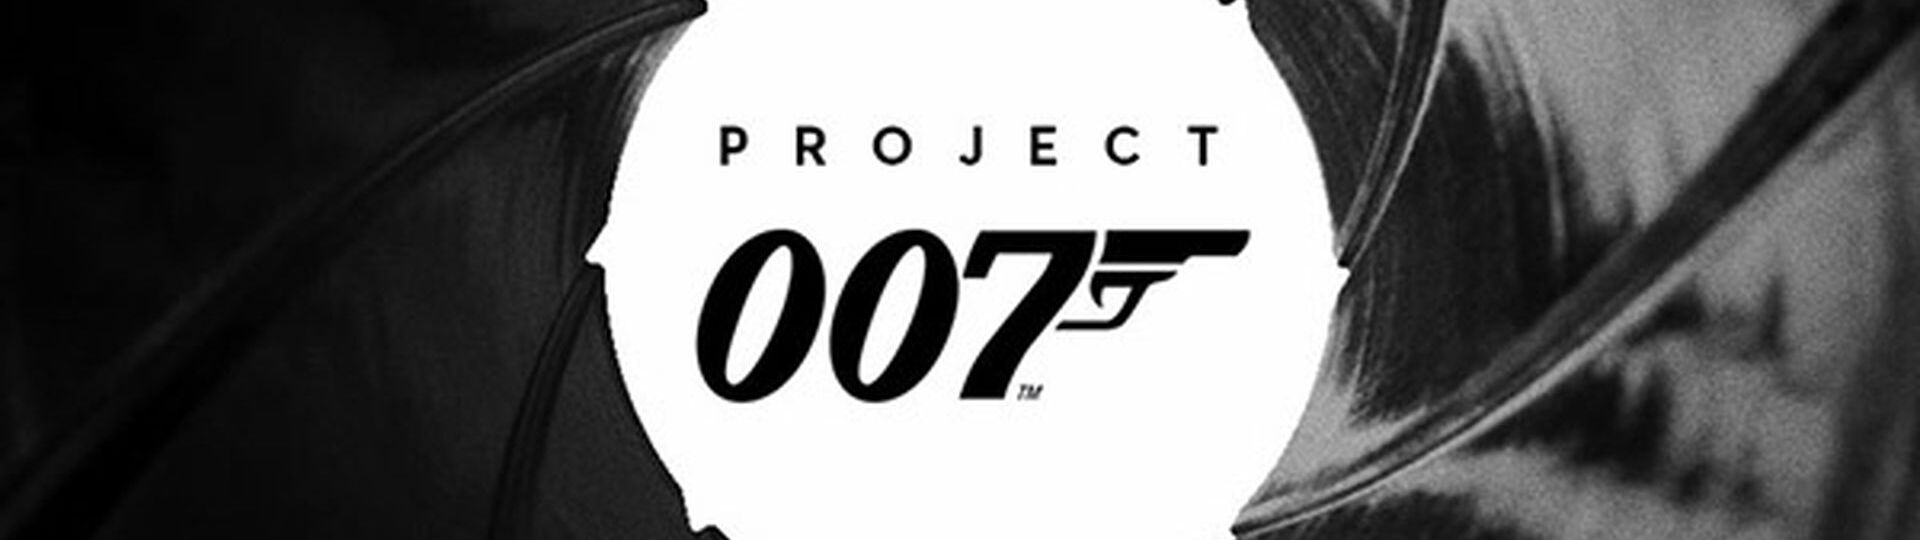 Project 007 nebude vycházet ze žádné filmové předlohy | Novinky